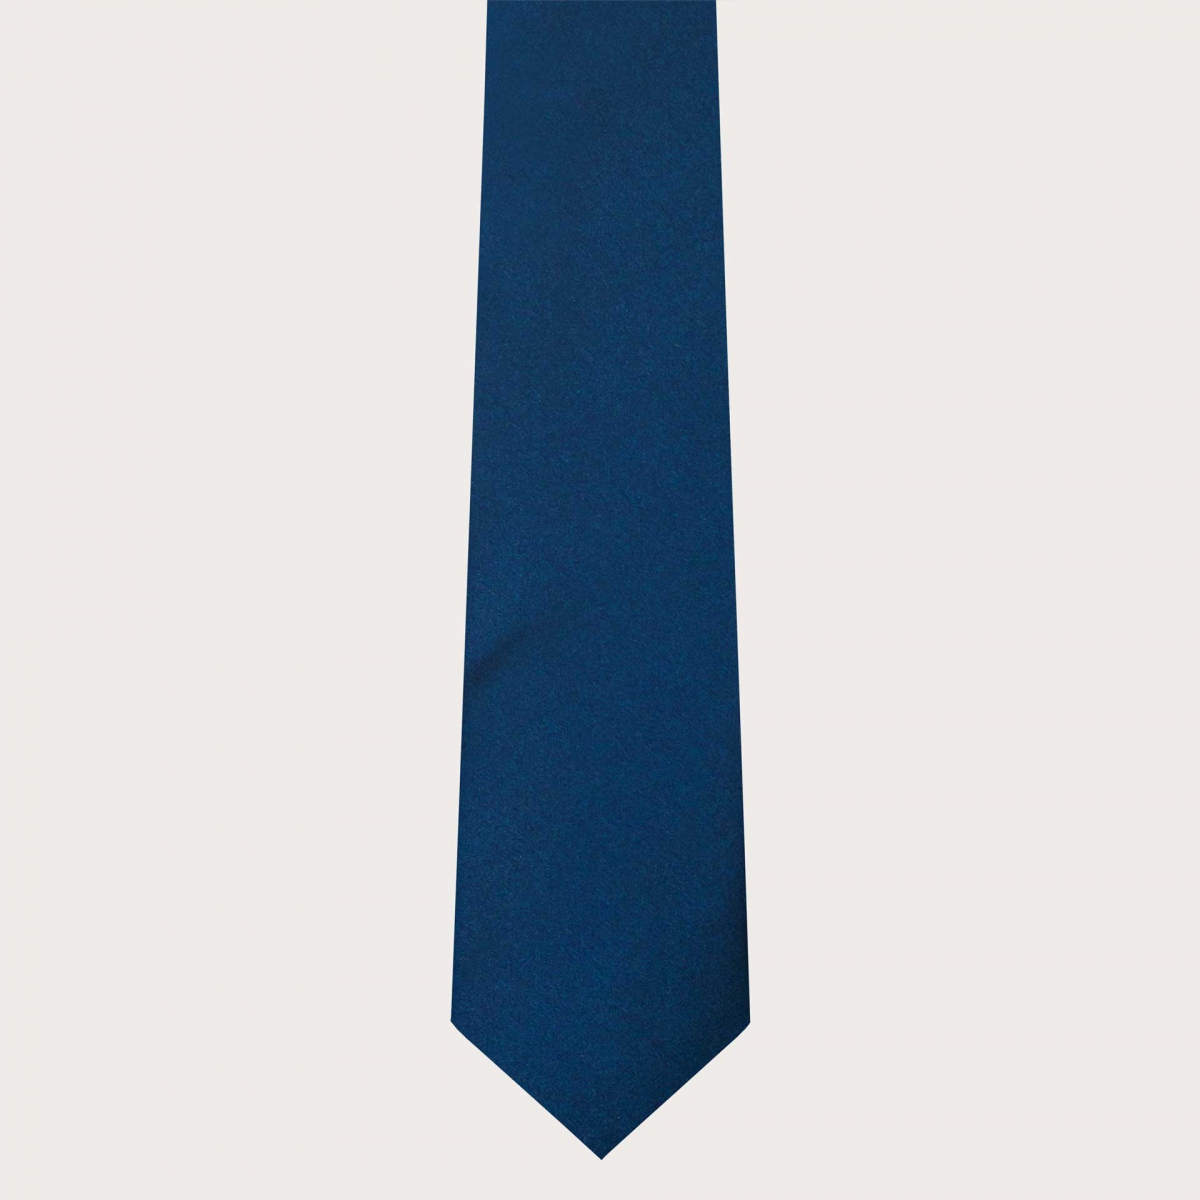 BRUCLE Cravatta classica in raso di seta blu